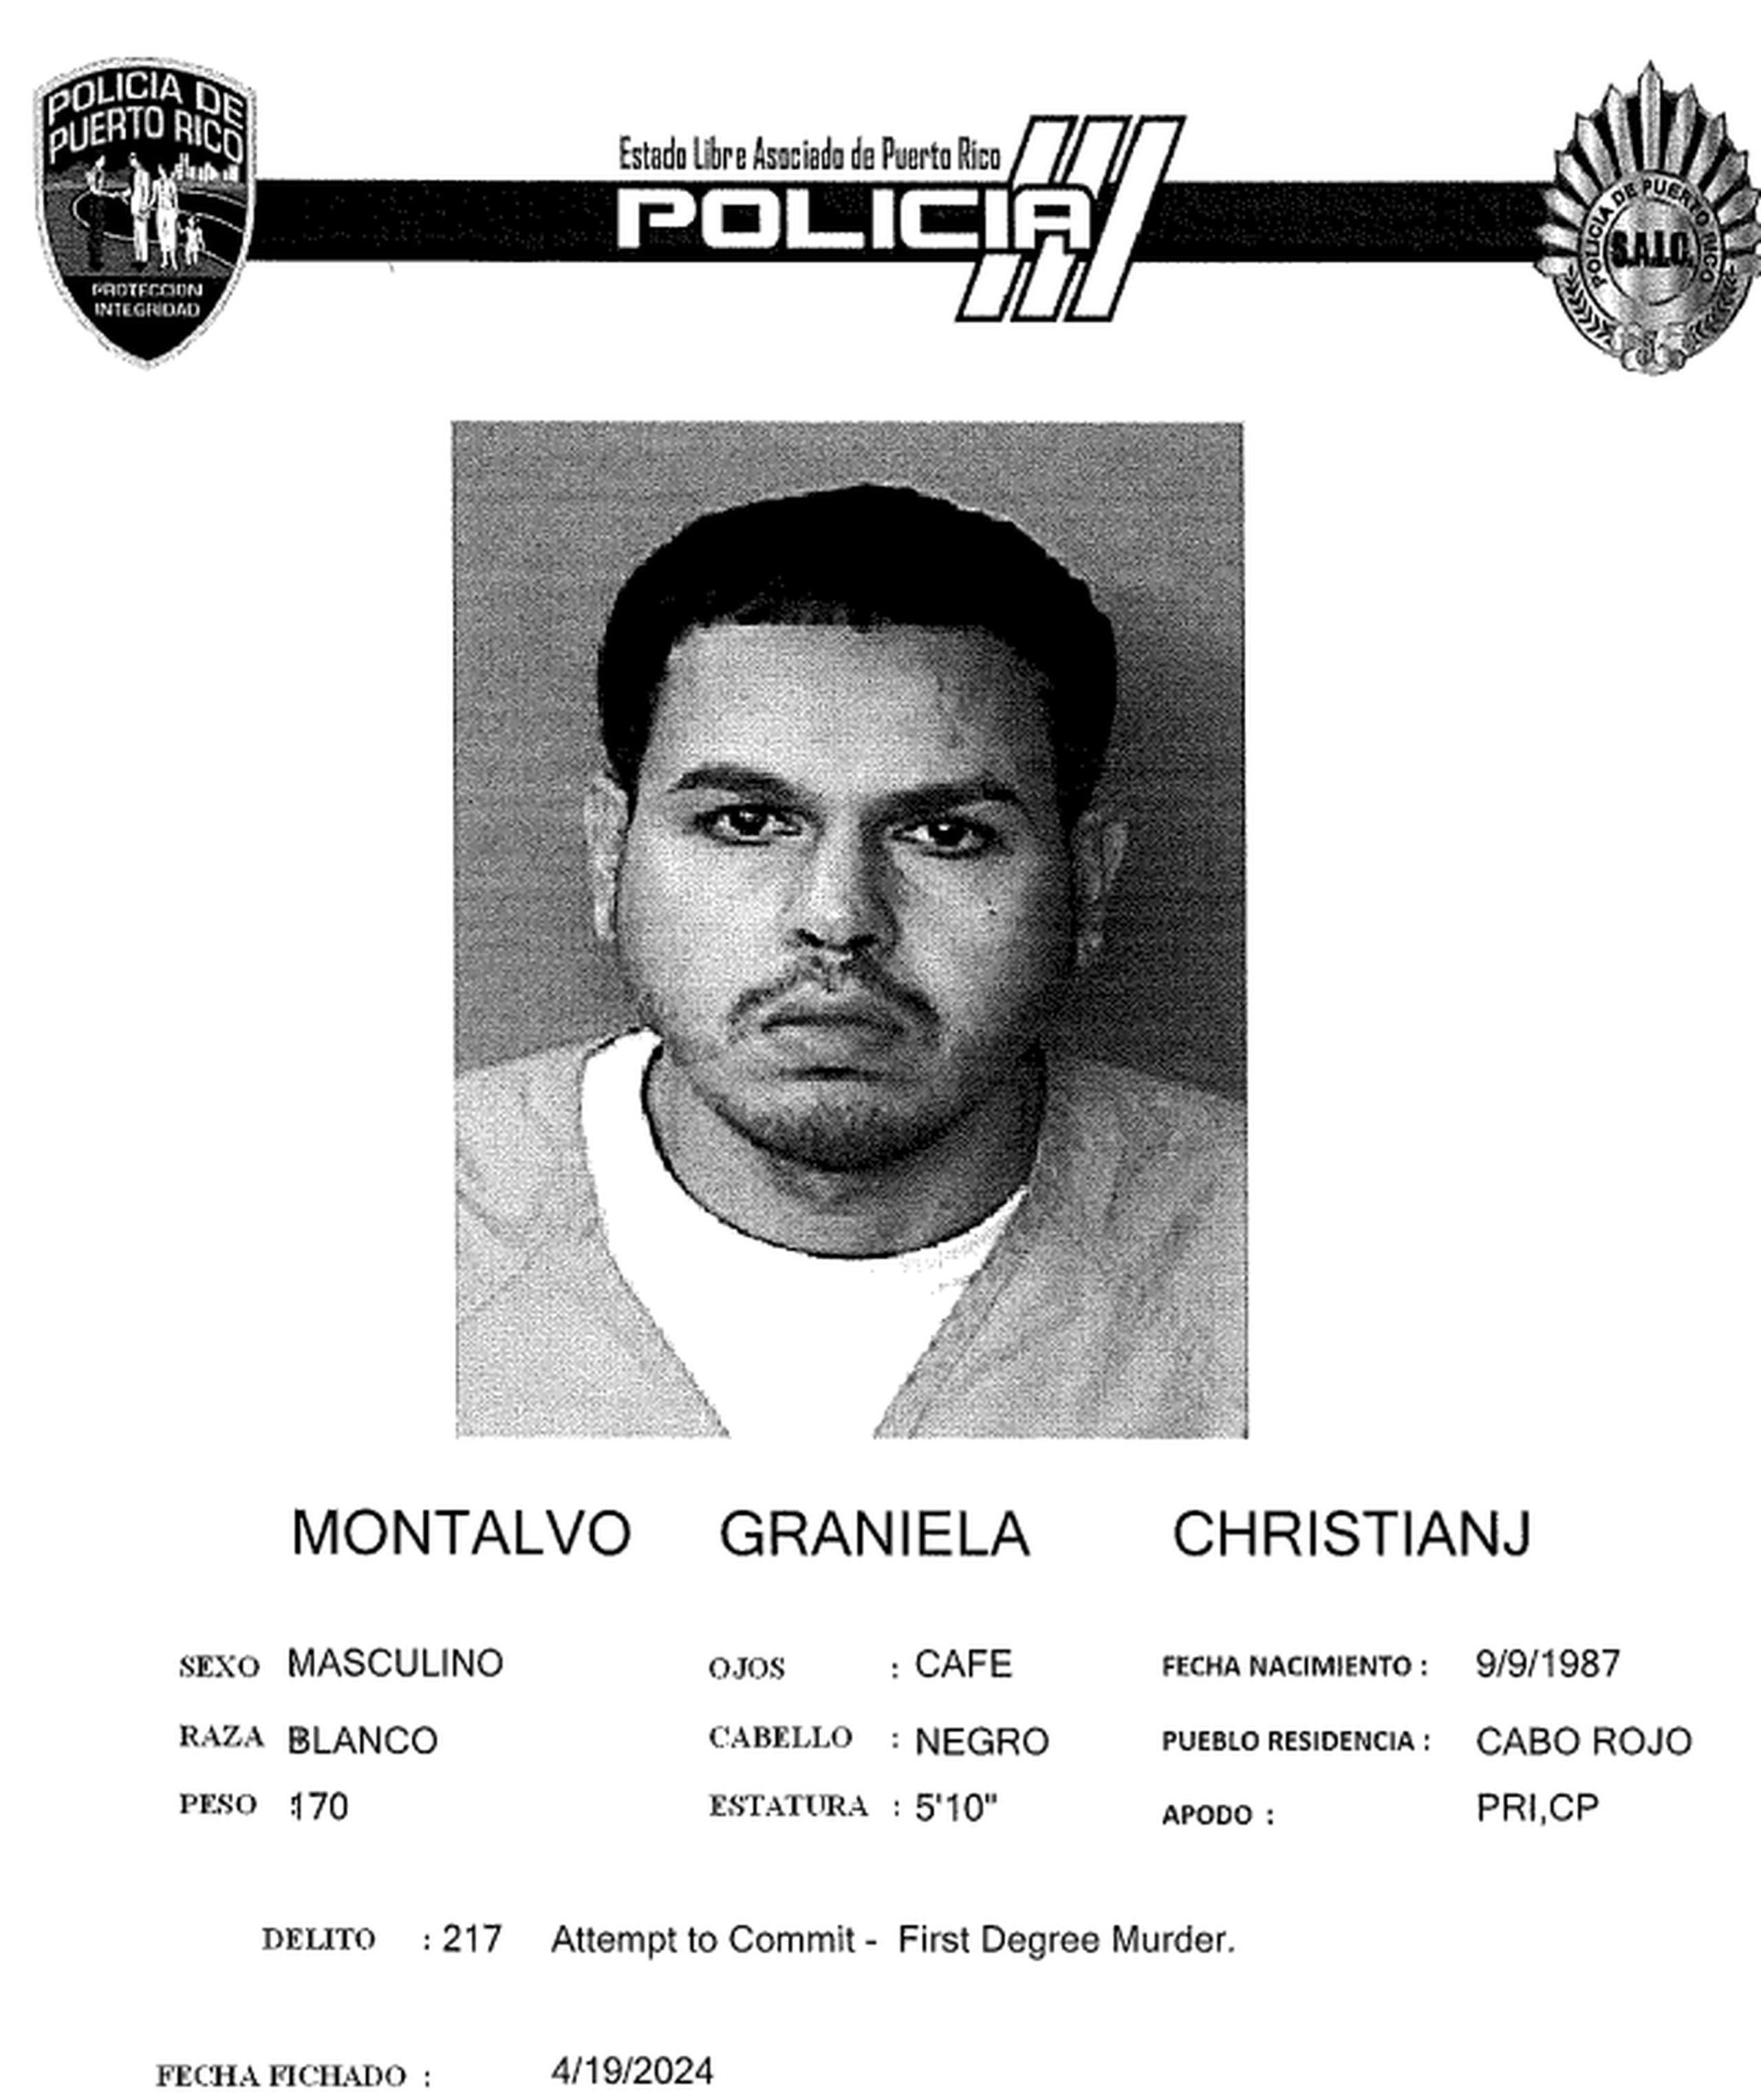 Christian J. Montalvo Graniela, de 37 años.